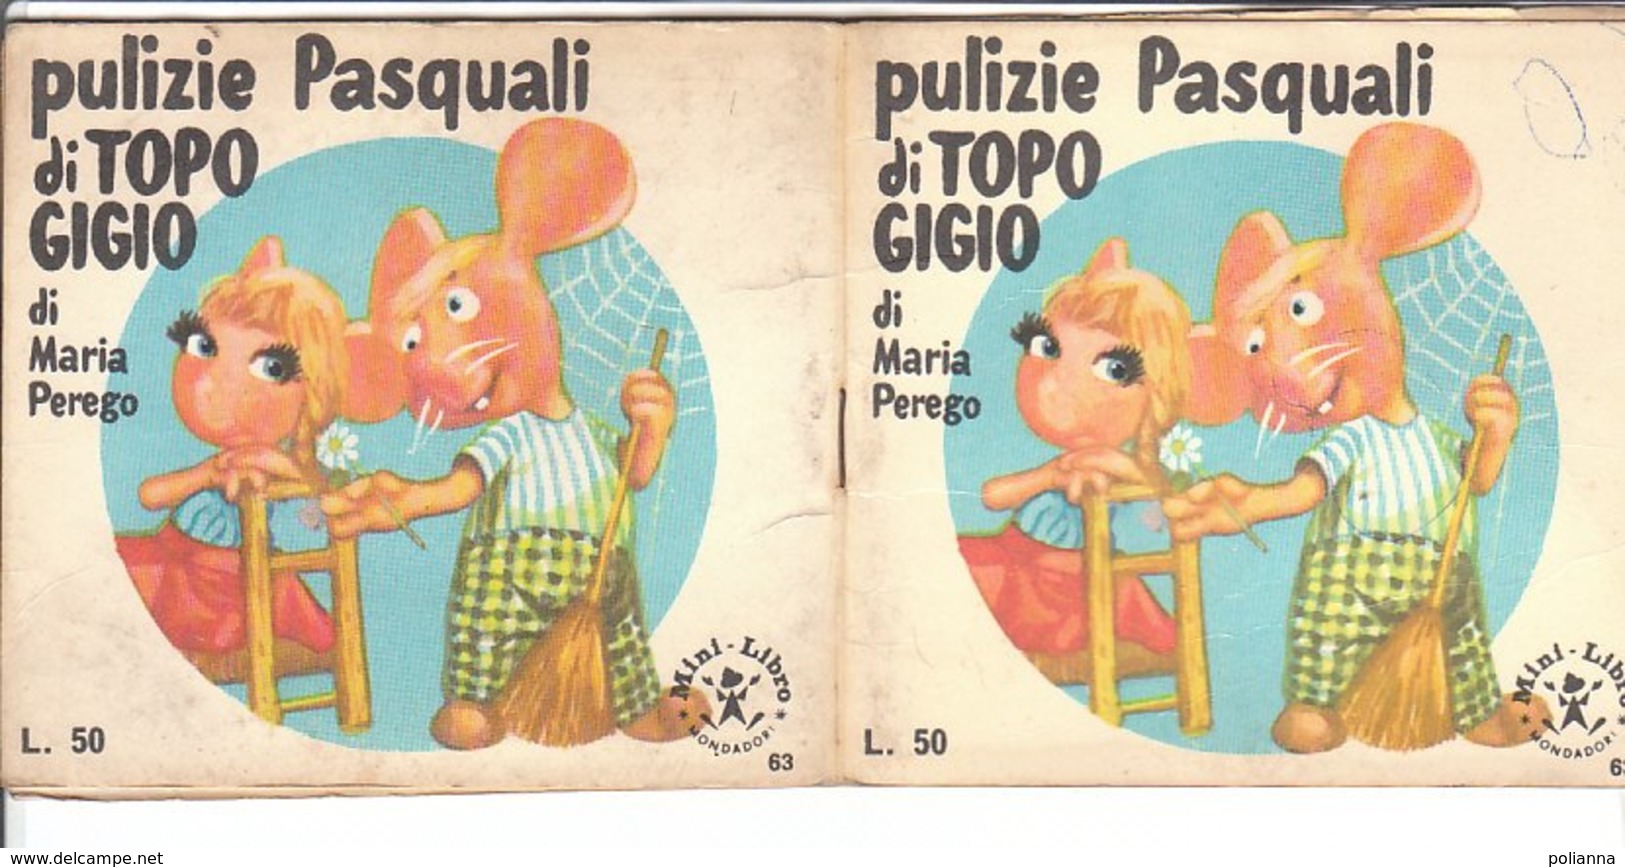 M#0V85 MINI LIBRO N.63 Maria Perego PULIZIE PASQUALI DI TOPO GIGIO Ed.Mondadori 1966 - Old